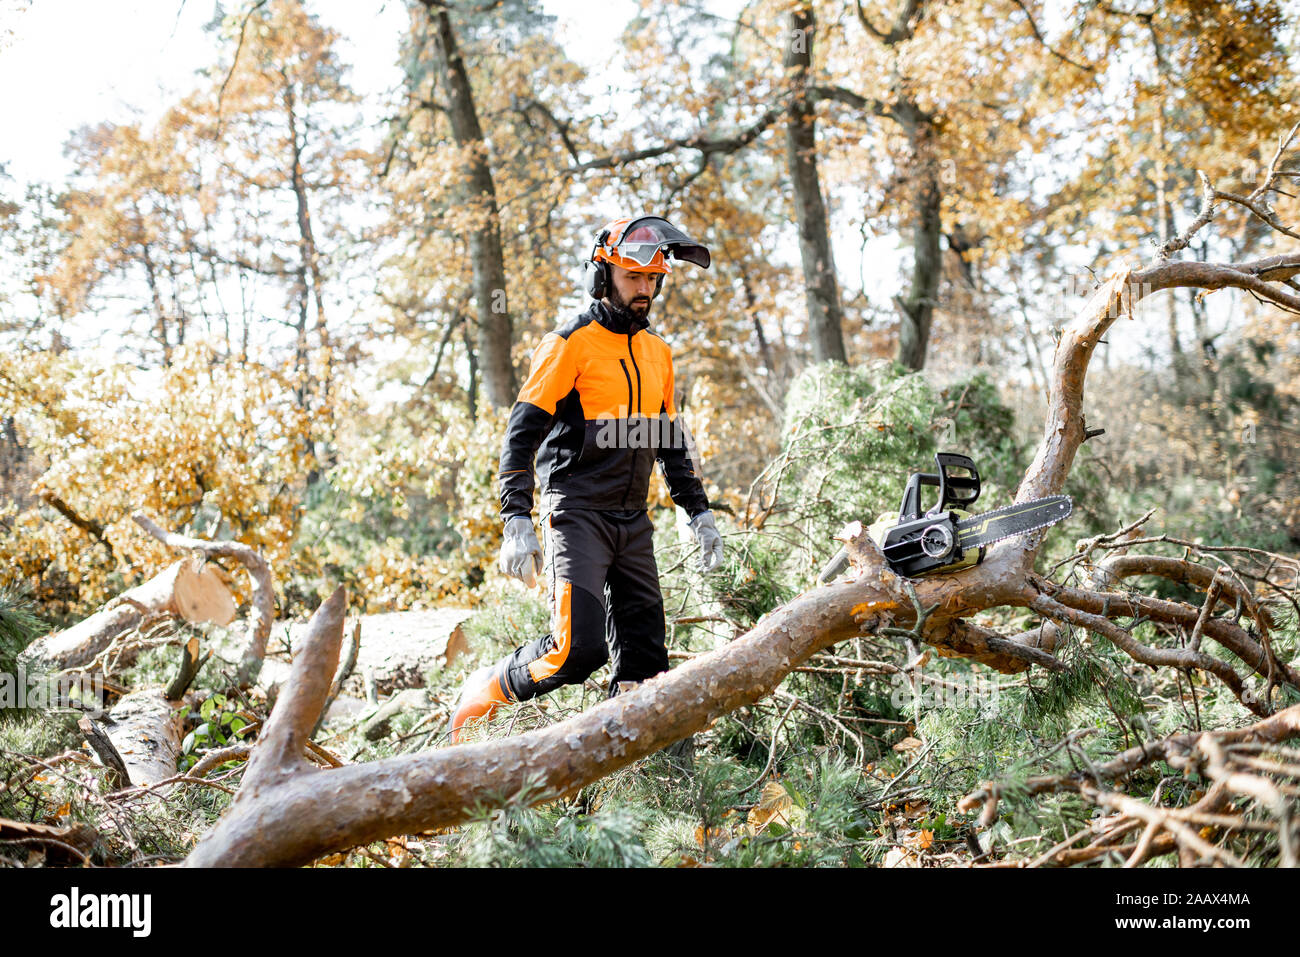 Professional lumberman in indumenti da lavoro protettiva per raggiungere a piedi l'albero abbattuto durante un lavoro di registrazione con una motosega nel bosco Foto Stock